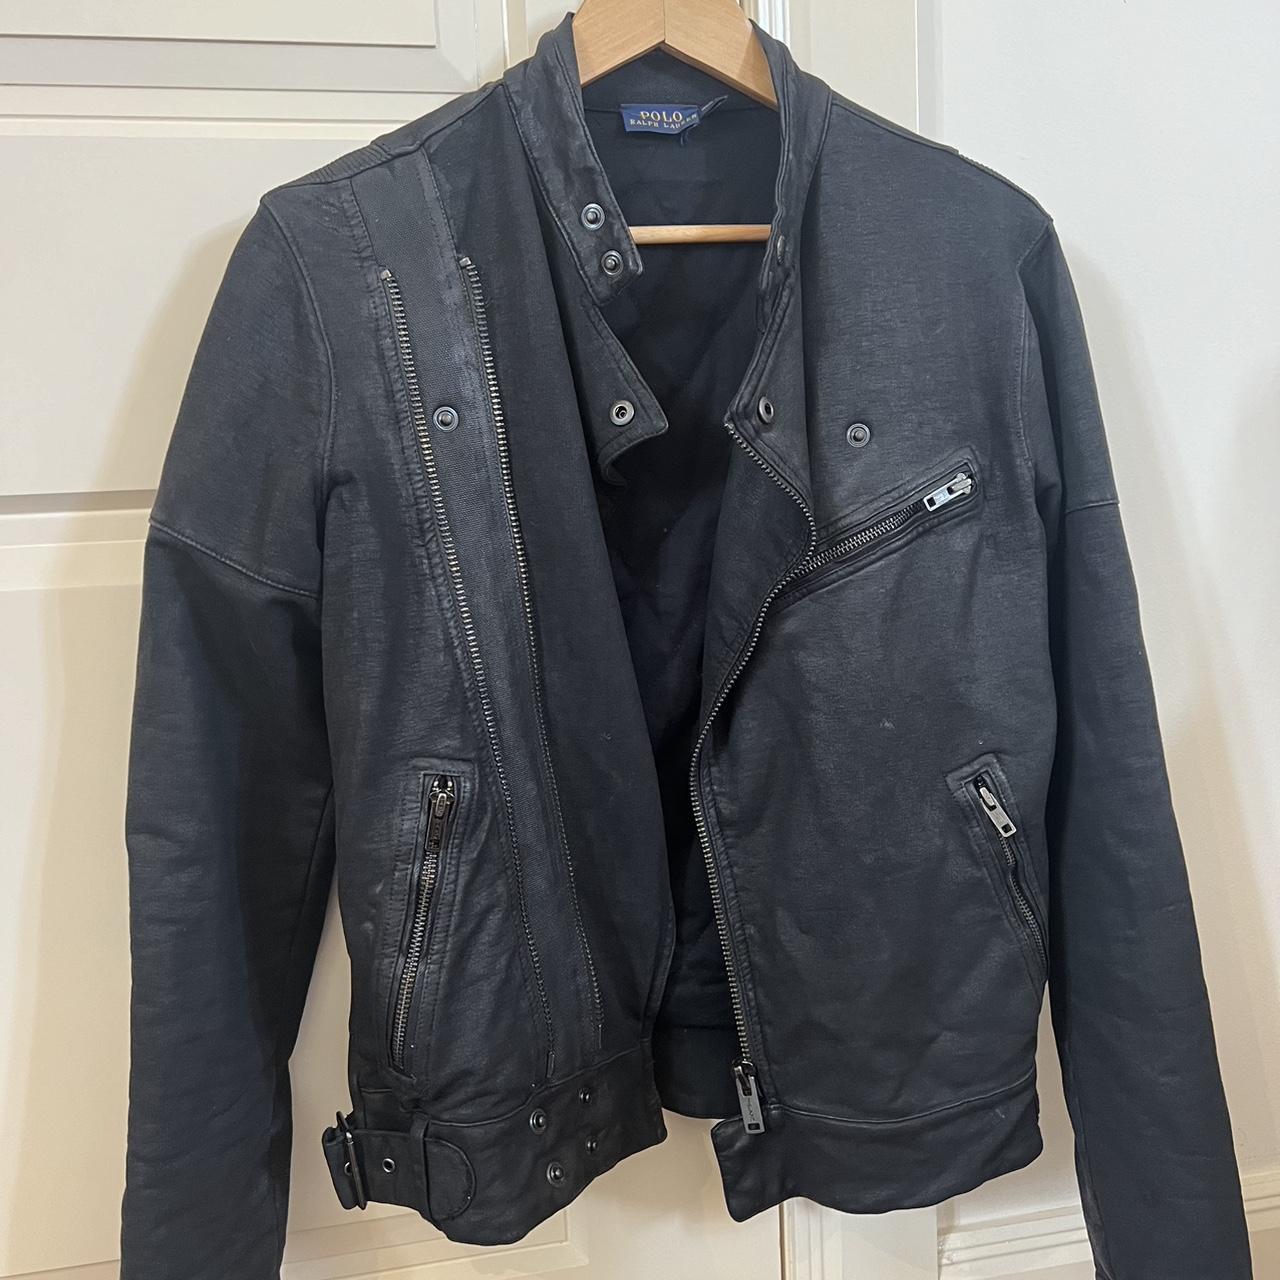 Ralph Lauren leather jacket - Depop